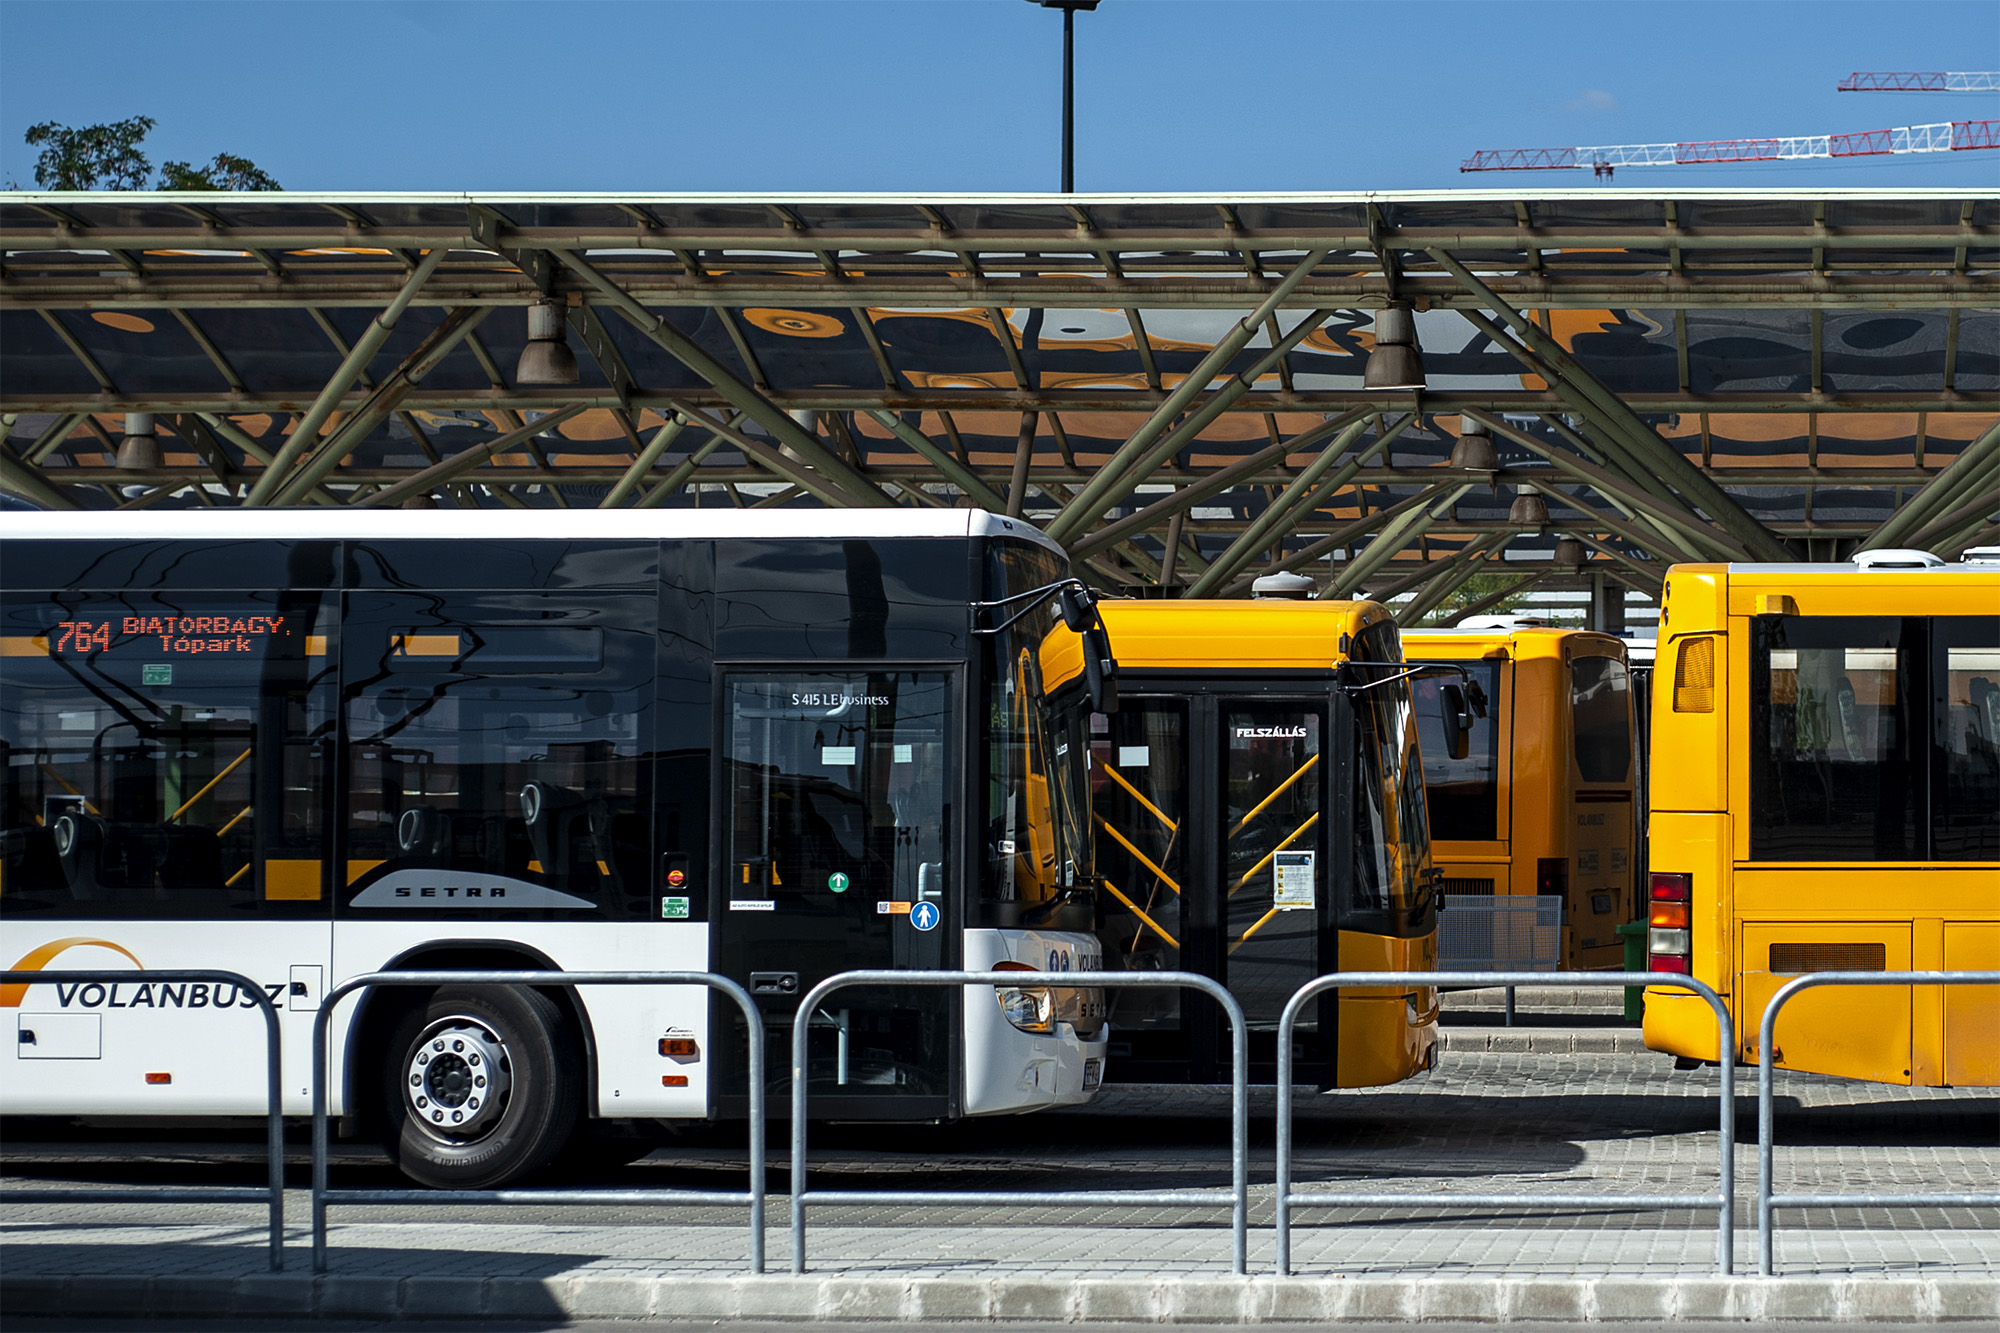 A képen oldalról fotózott autóbuszok láthatók egy autóbusz állomáson.